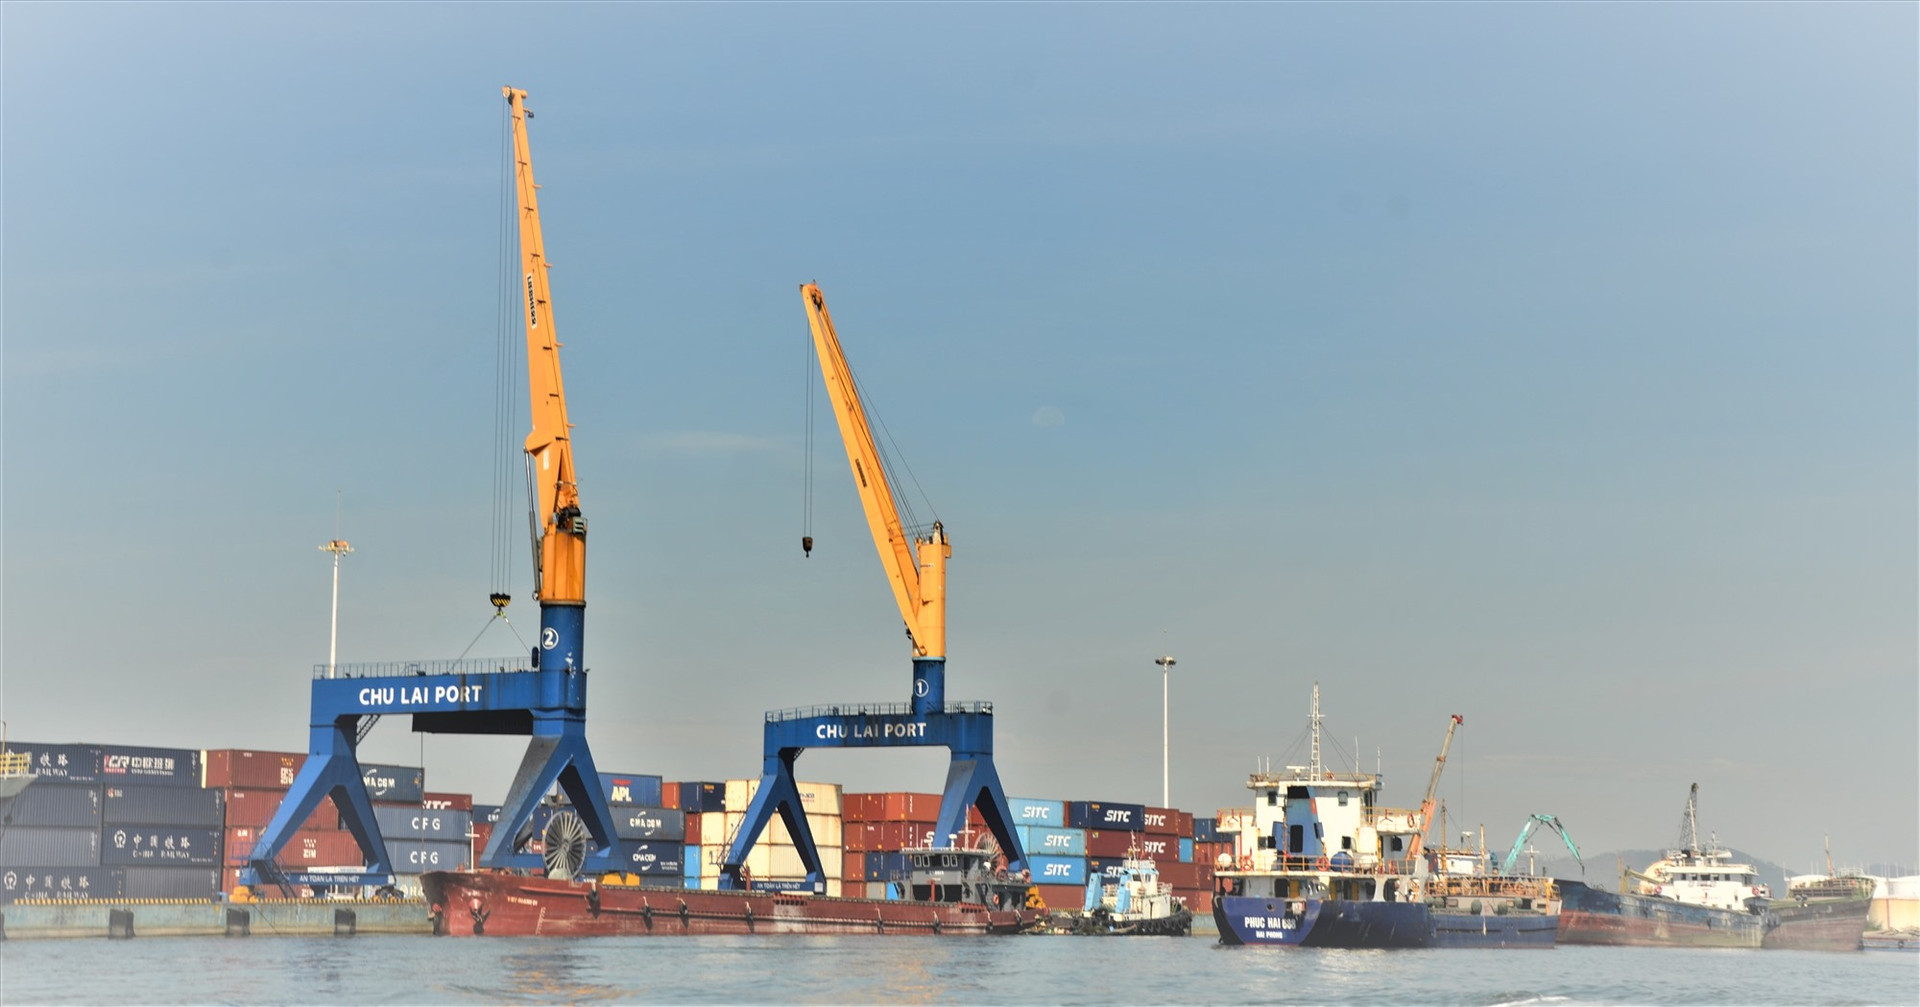 Hệ thống cảng biển là lợi thế cạnh tranh của vùng kinh tế trọng điểm miền Trung. TRONG ẢNH: Cảng Trường Hải - Chu Lai. Ảnh: H.P